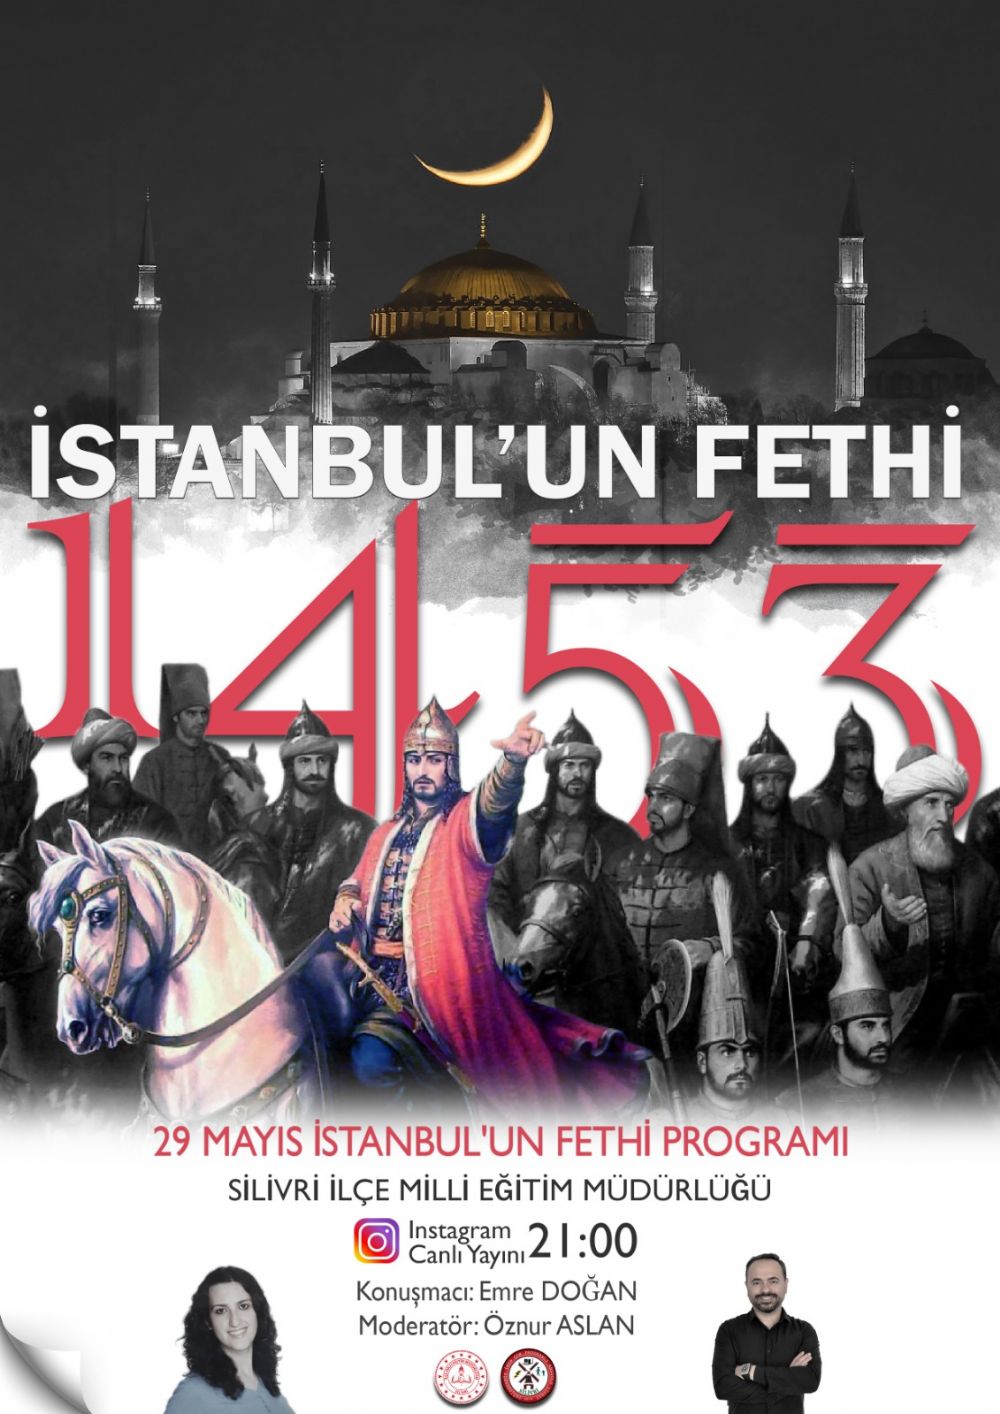 İstanbul'un fethinin 568. yılı kutlandı